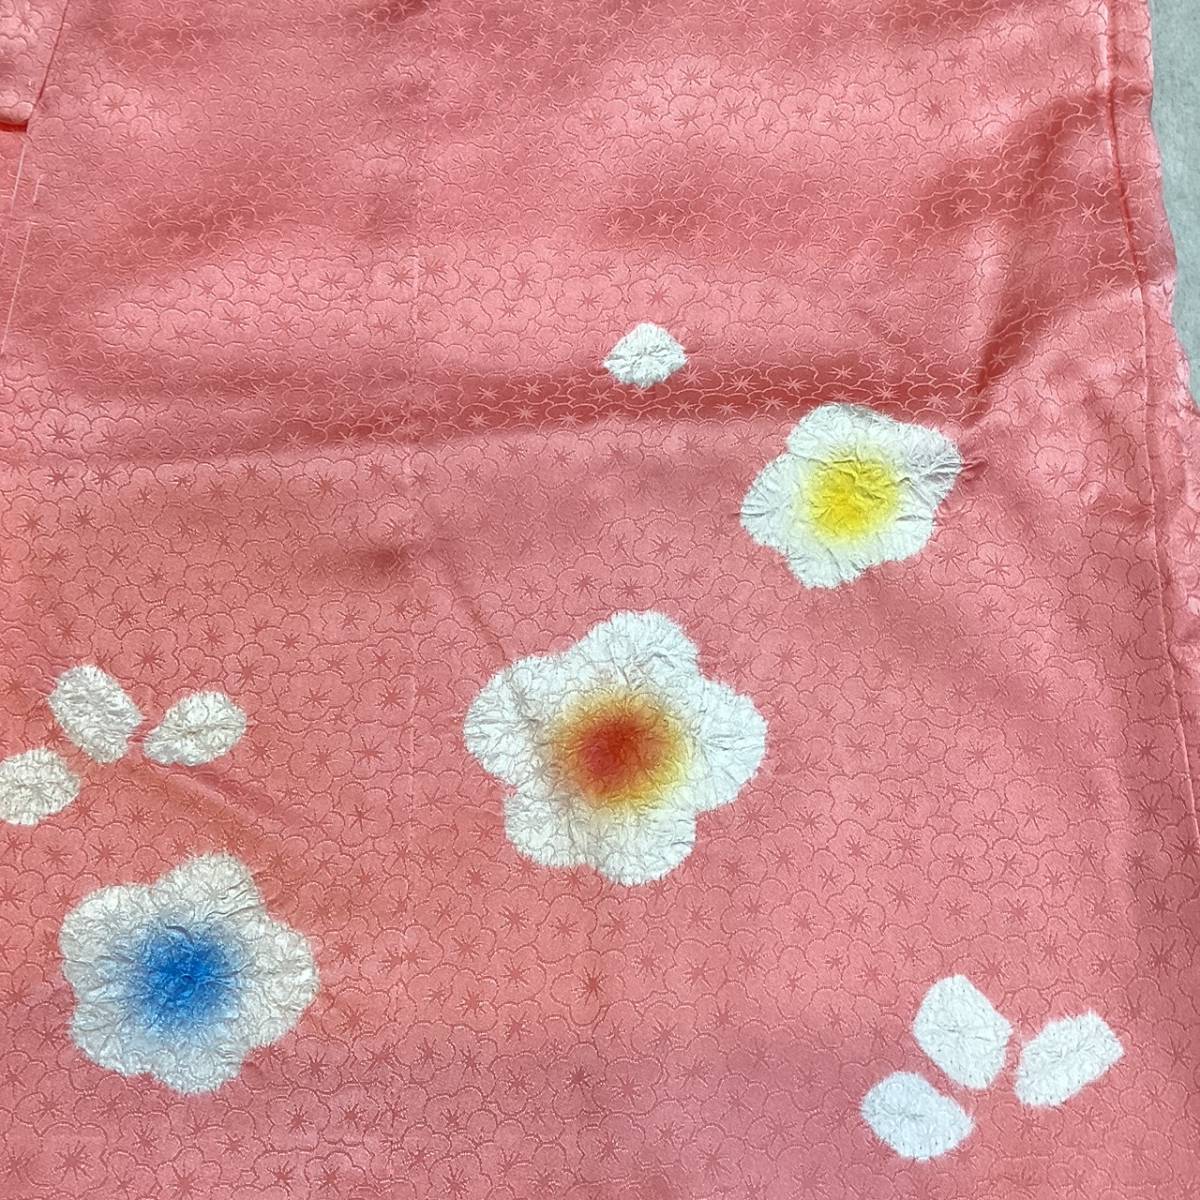  "Семь, пять, три" кимоно 3 лет mi503 натуральный шелк . ткань * кимоно 6 позиций комплект розовый цвет сделано в Японии новый товар включая доставку 